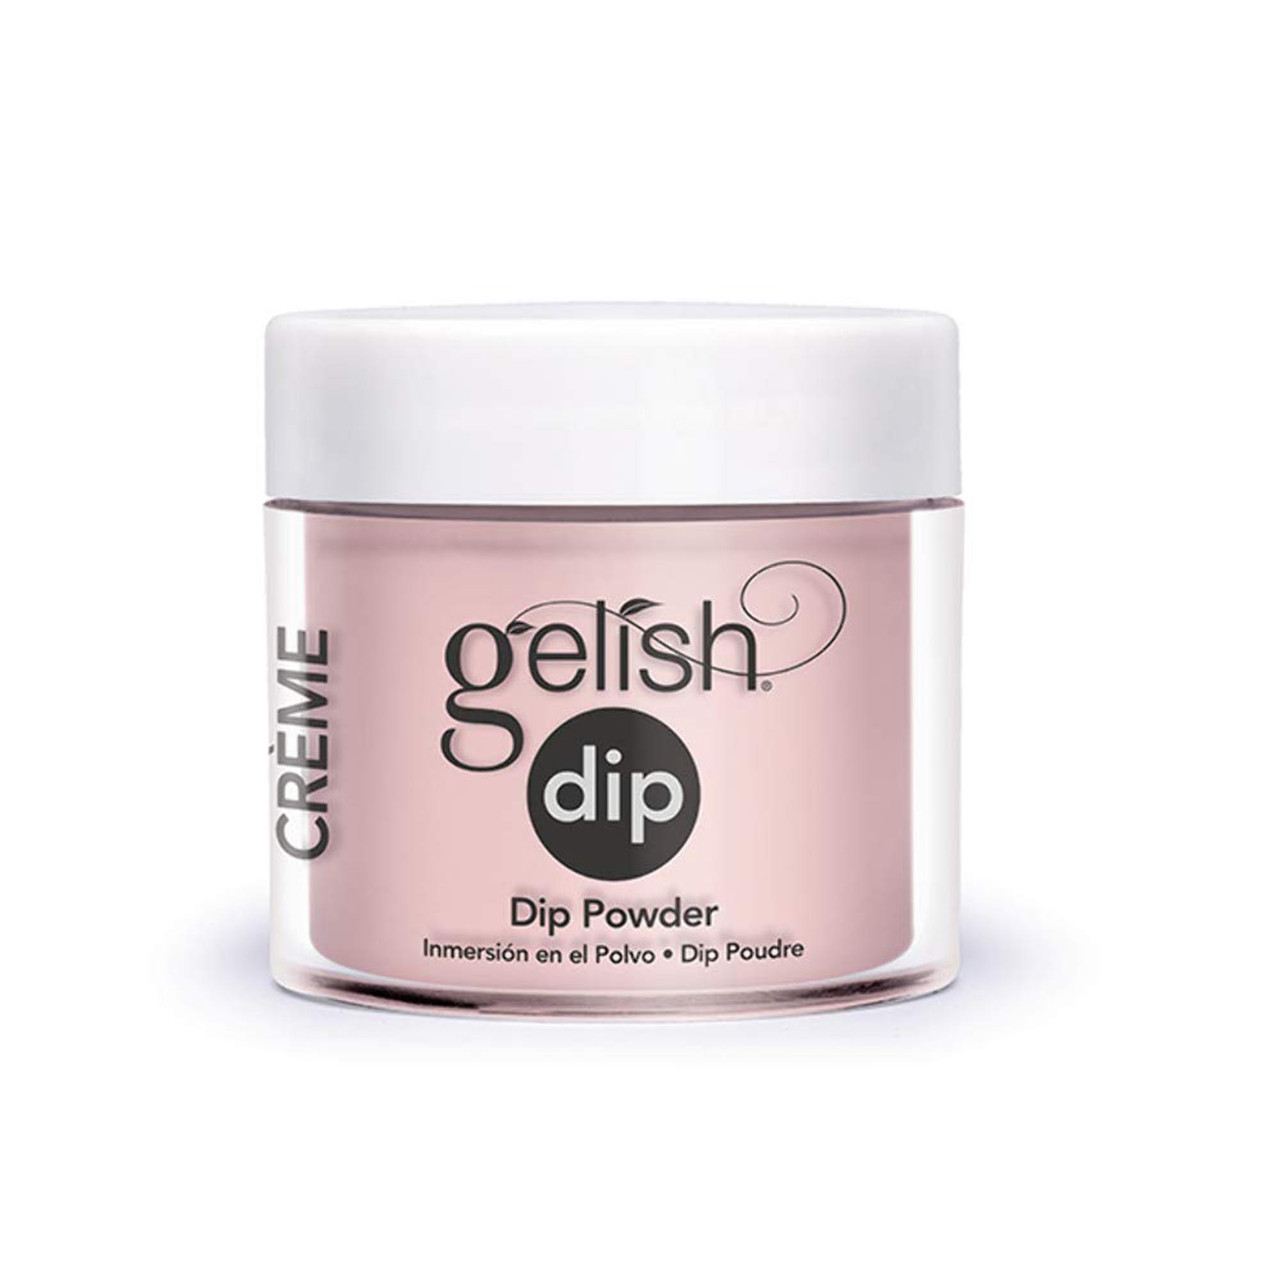 Gelish Dip Powder - 1610006 - Simply Irresistible